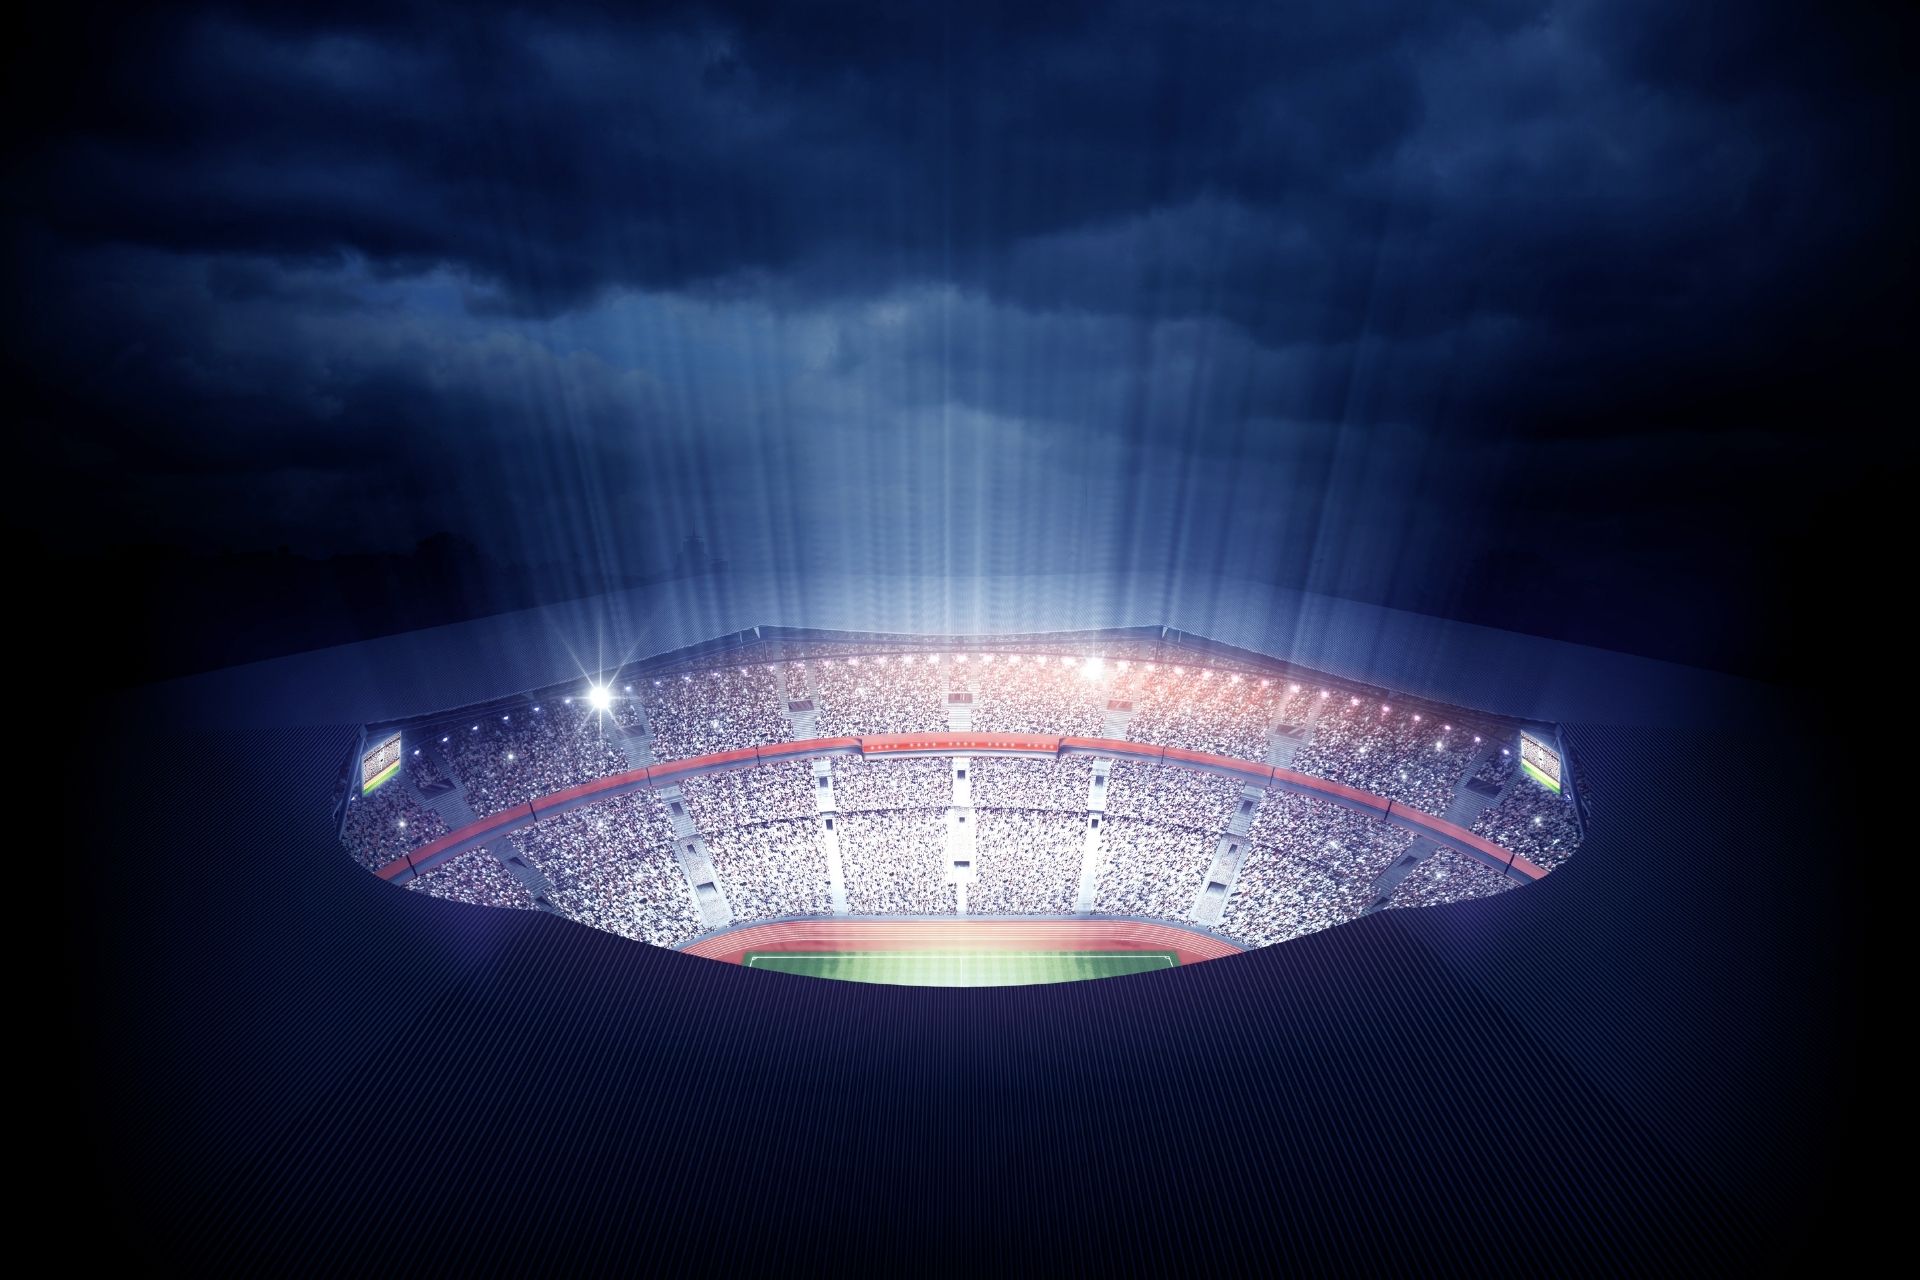 Na stadionie VELTINS-Arena dnia 2023-01-24 17:30 miało miejsce spotkanie między FC Schalke 04 i RB Leipzig - 1-6